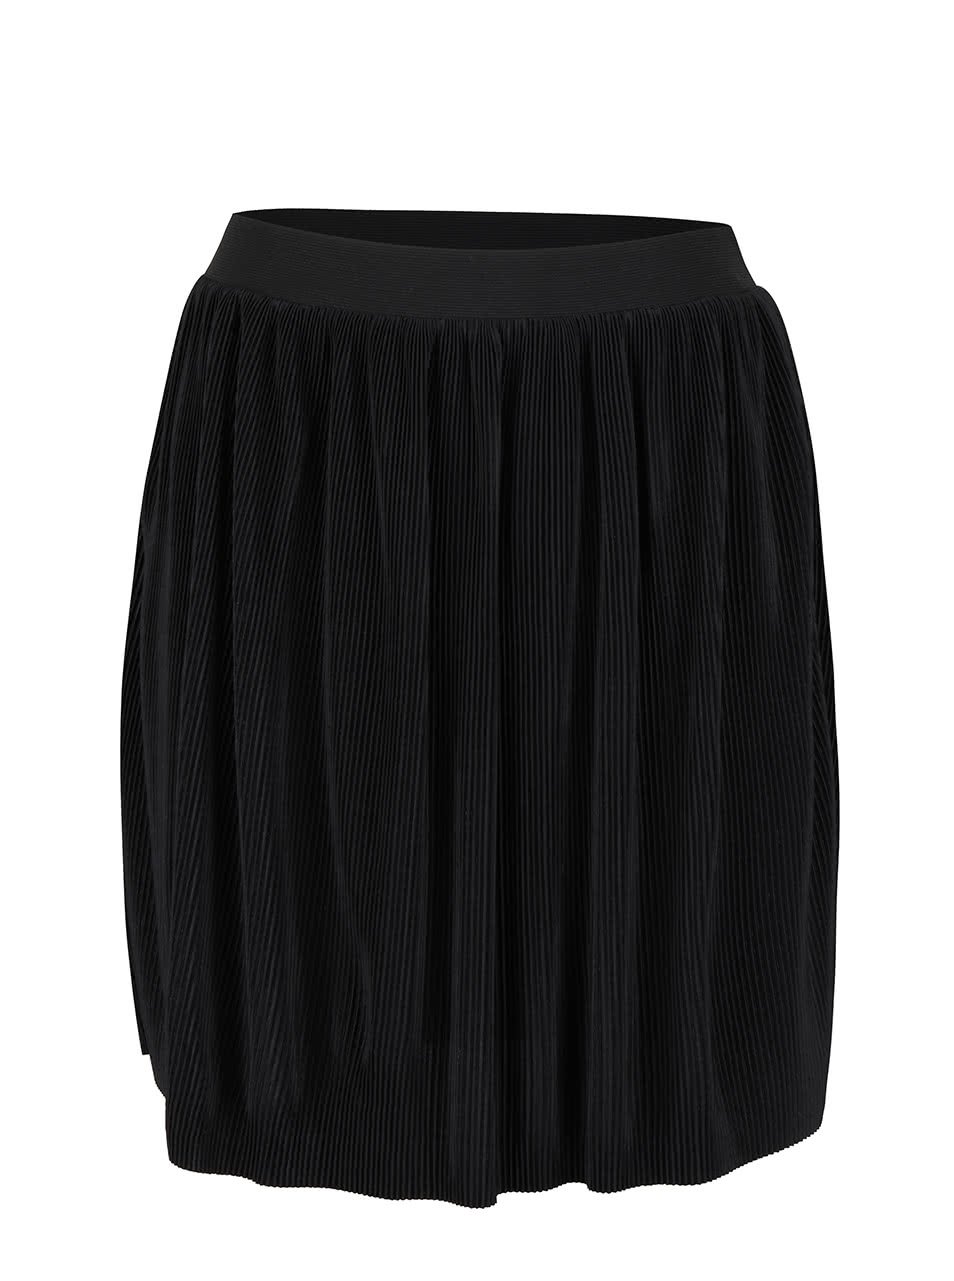 Černá plisovaná sukně se spodničkou VILA Plissa